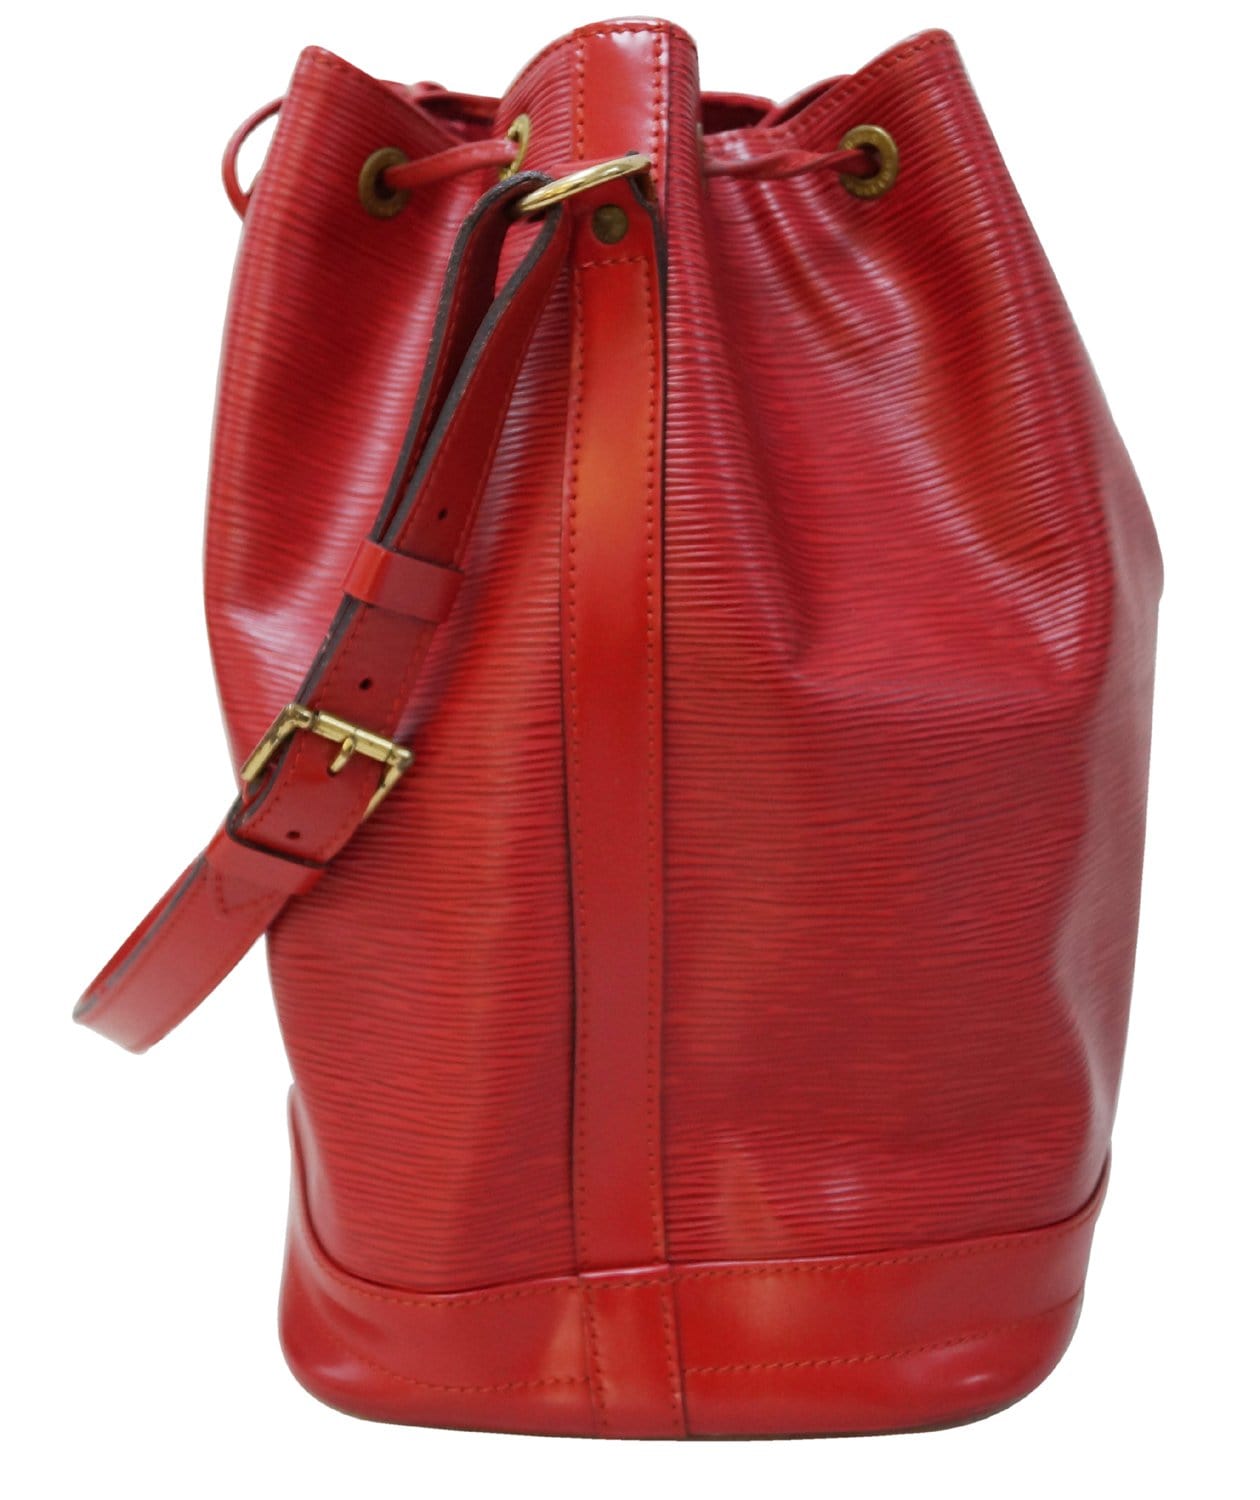 Louis Vuitton Vintage Louis Vuitton Noe Large Red Epi Leather